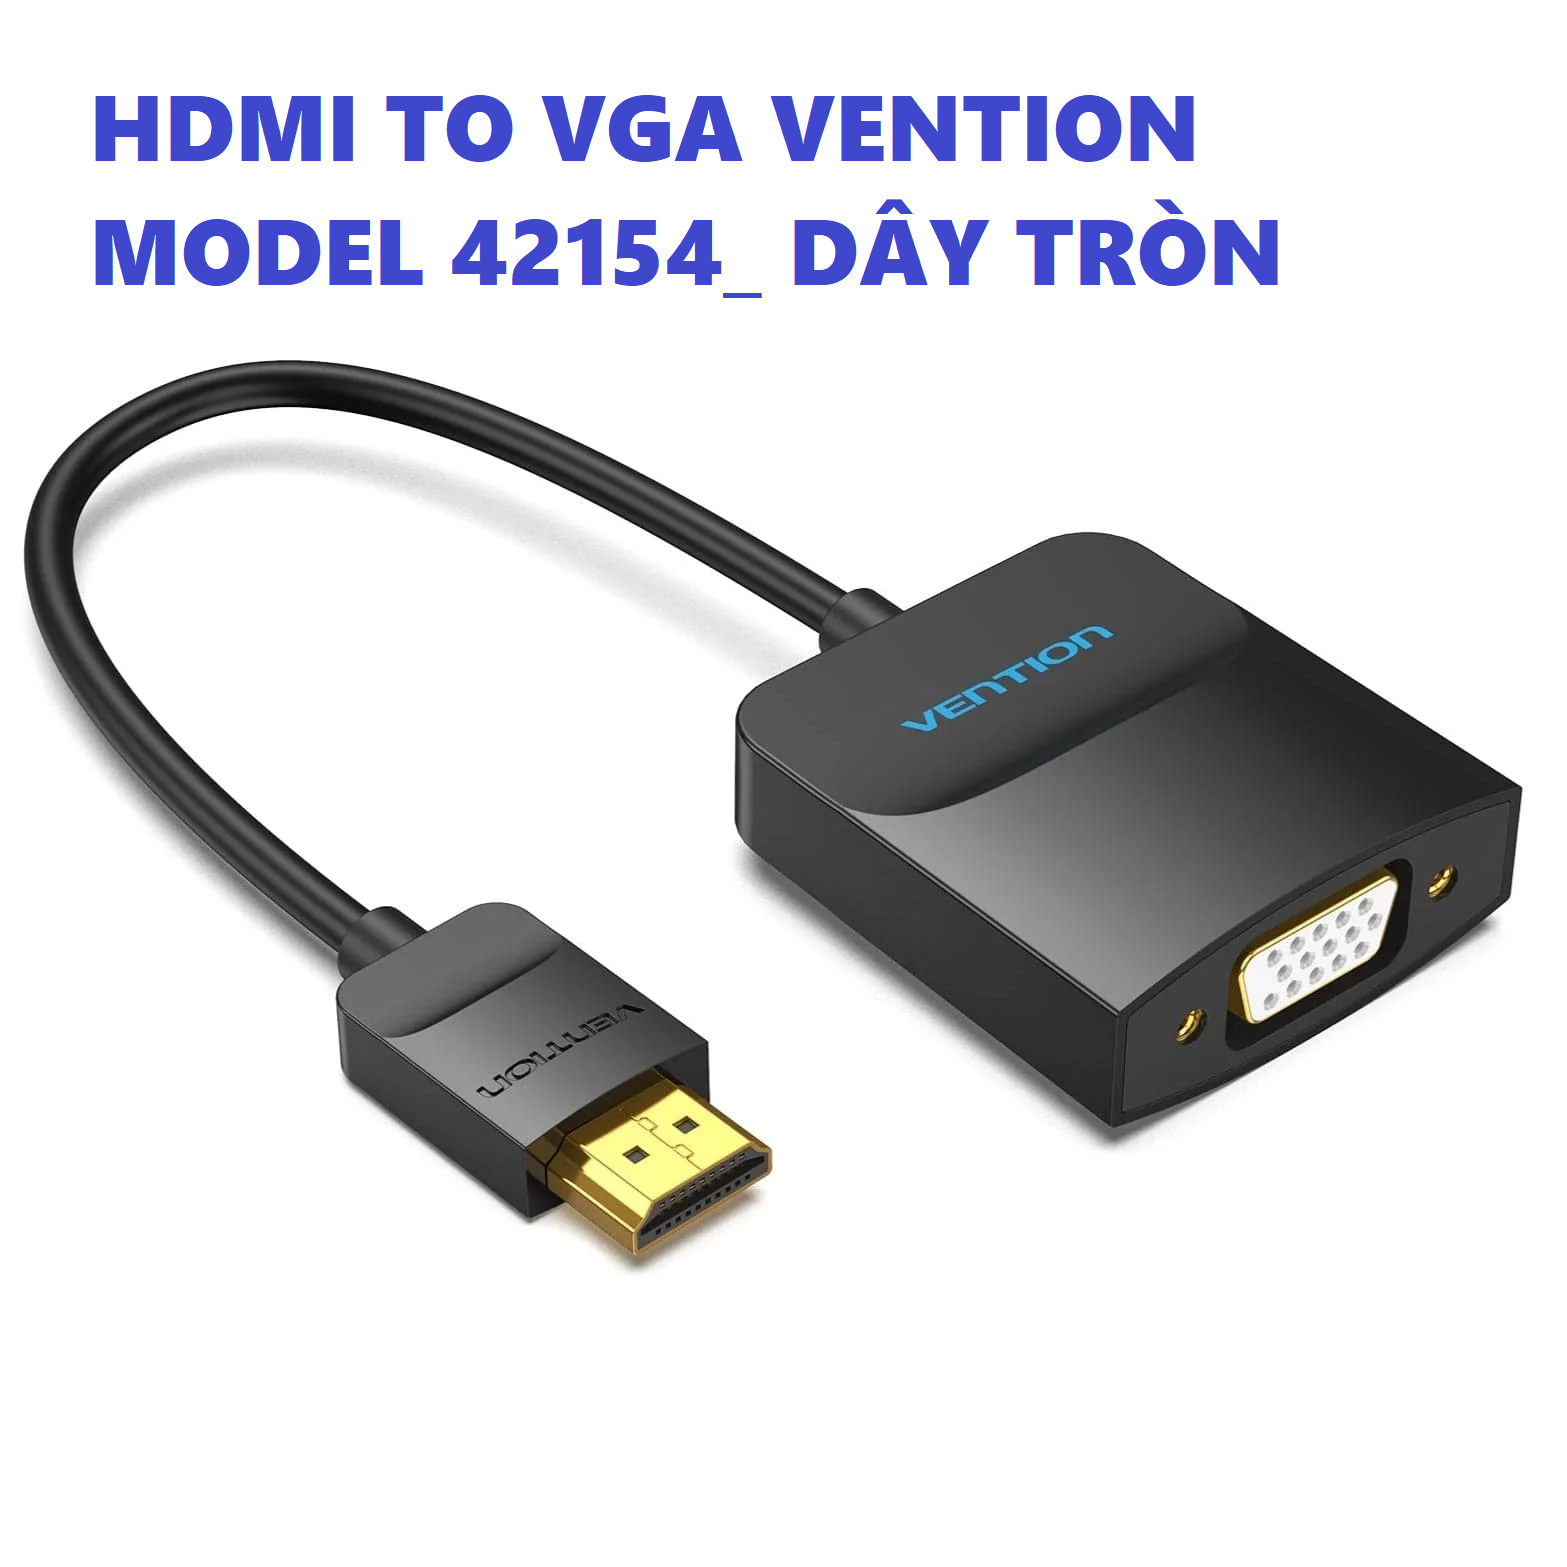 [ HDMI ra VGA ] Cáp chuyển đôi tín hiệu HDMI male ra VGA female 15cm Vention 74345 (dây dẹp) - Hàng chính hãng